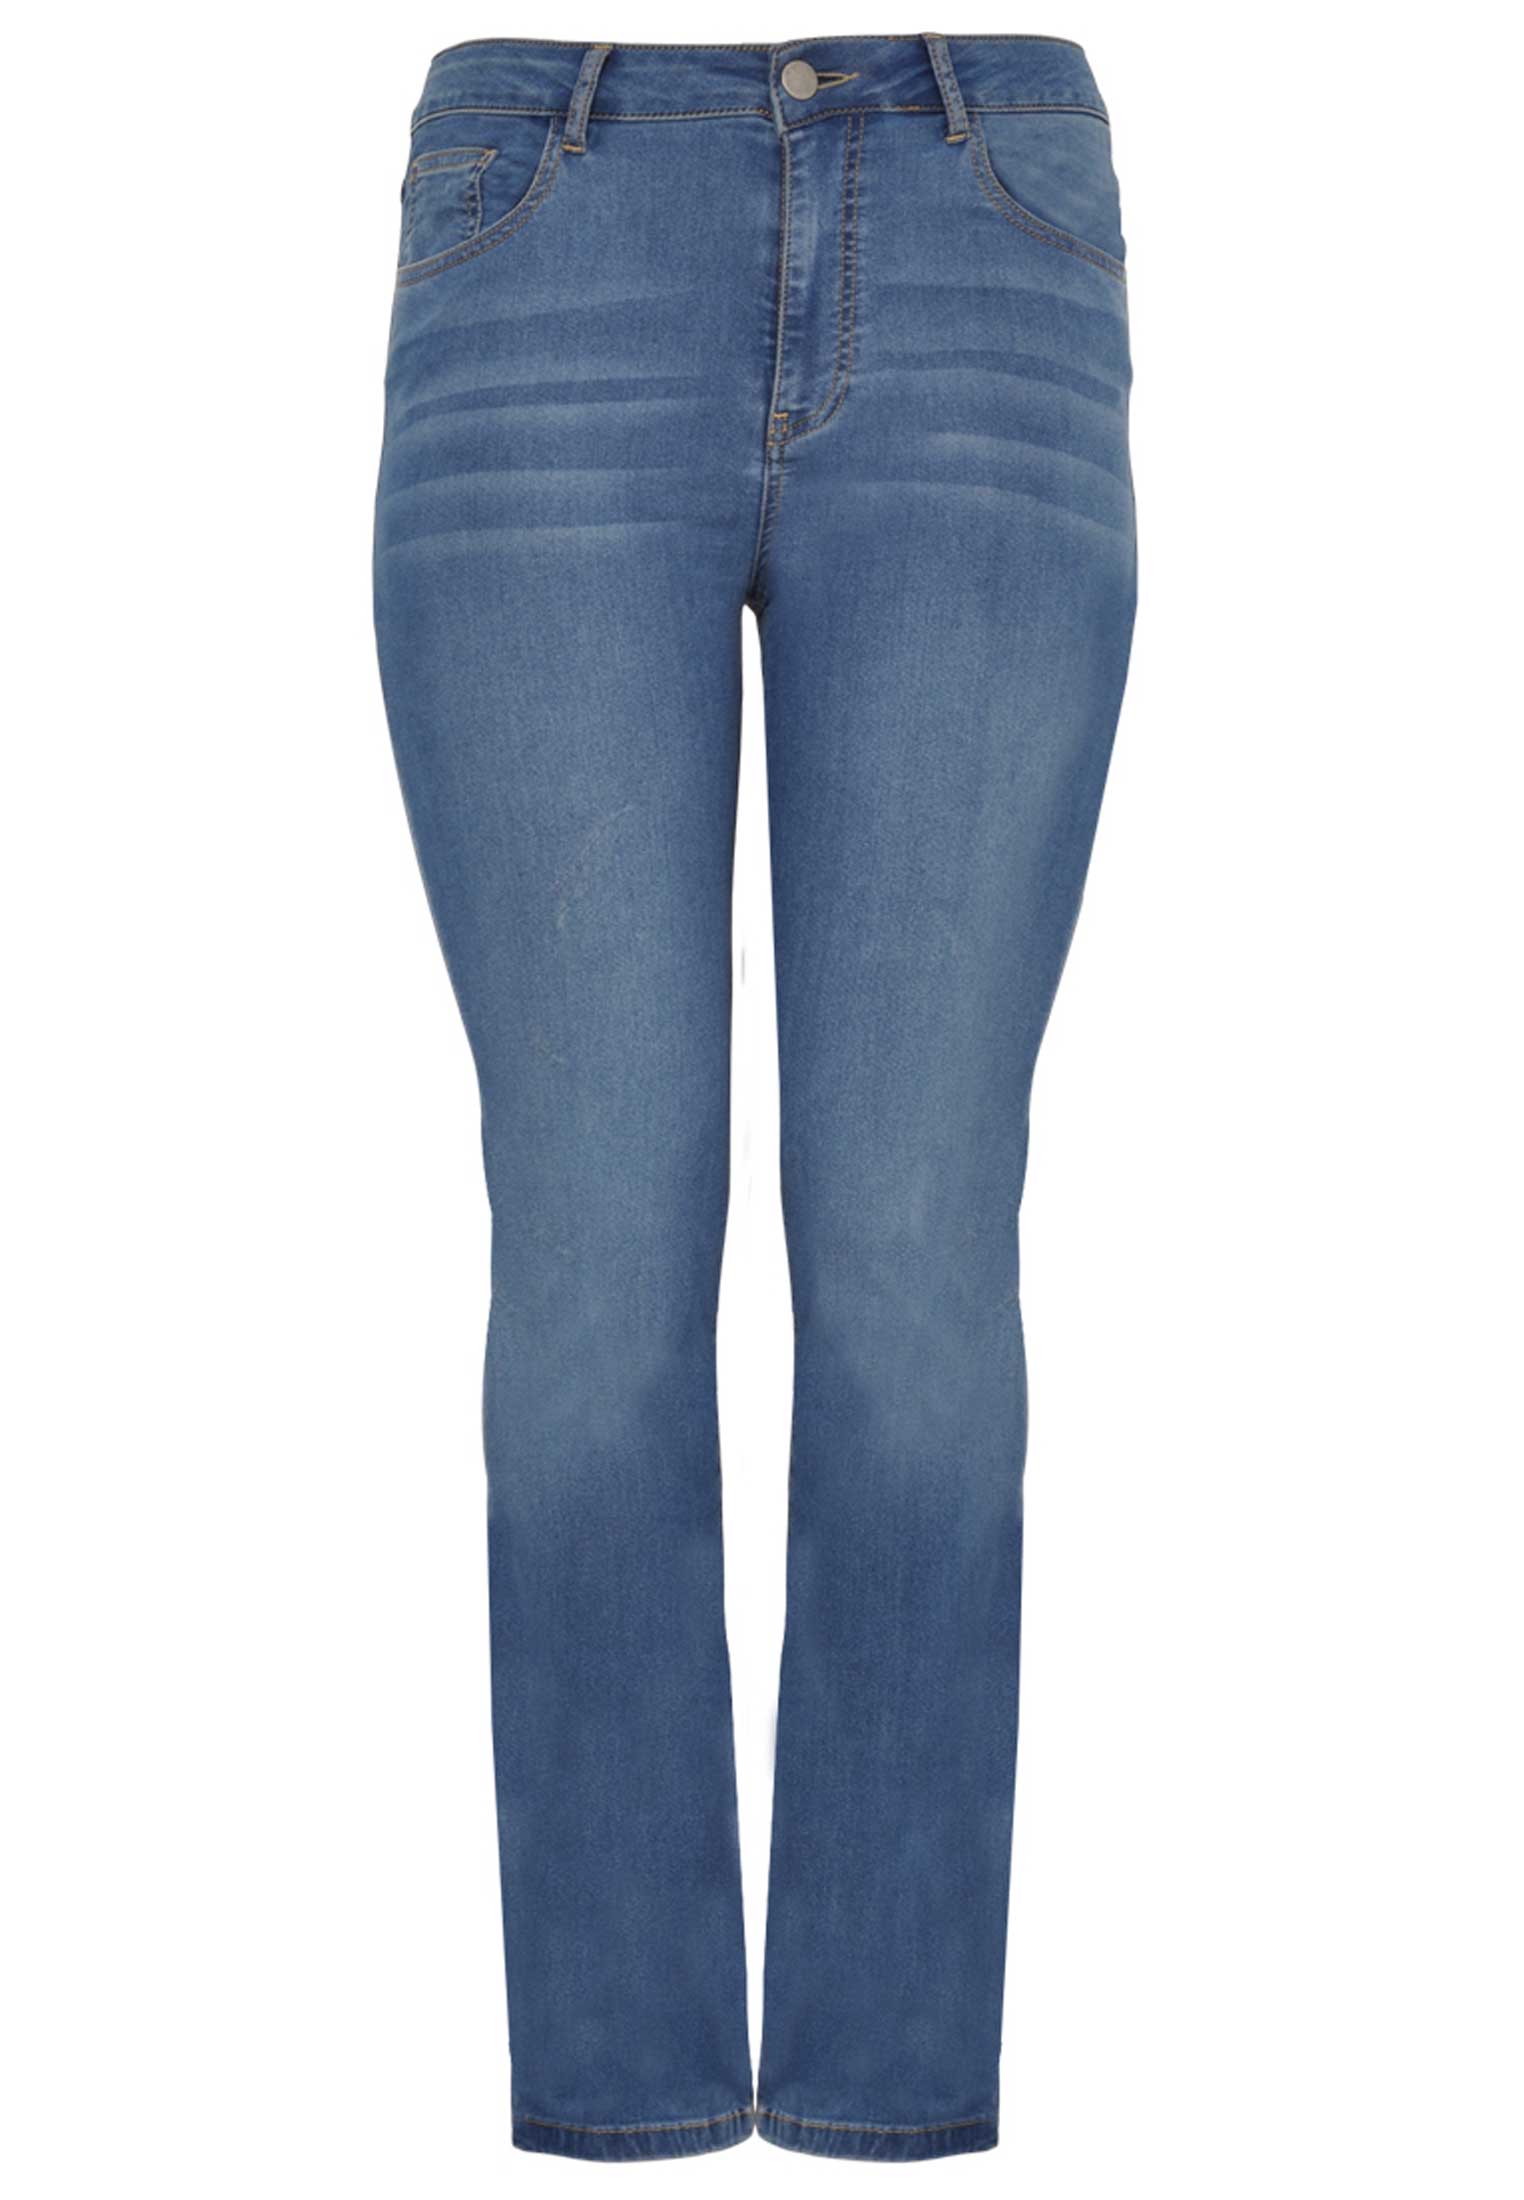 Jeans met rechte pijp 56 indigo